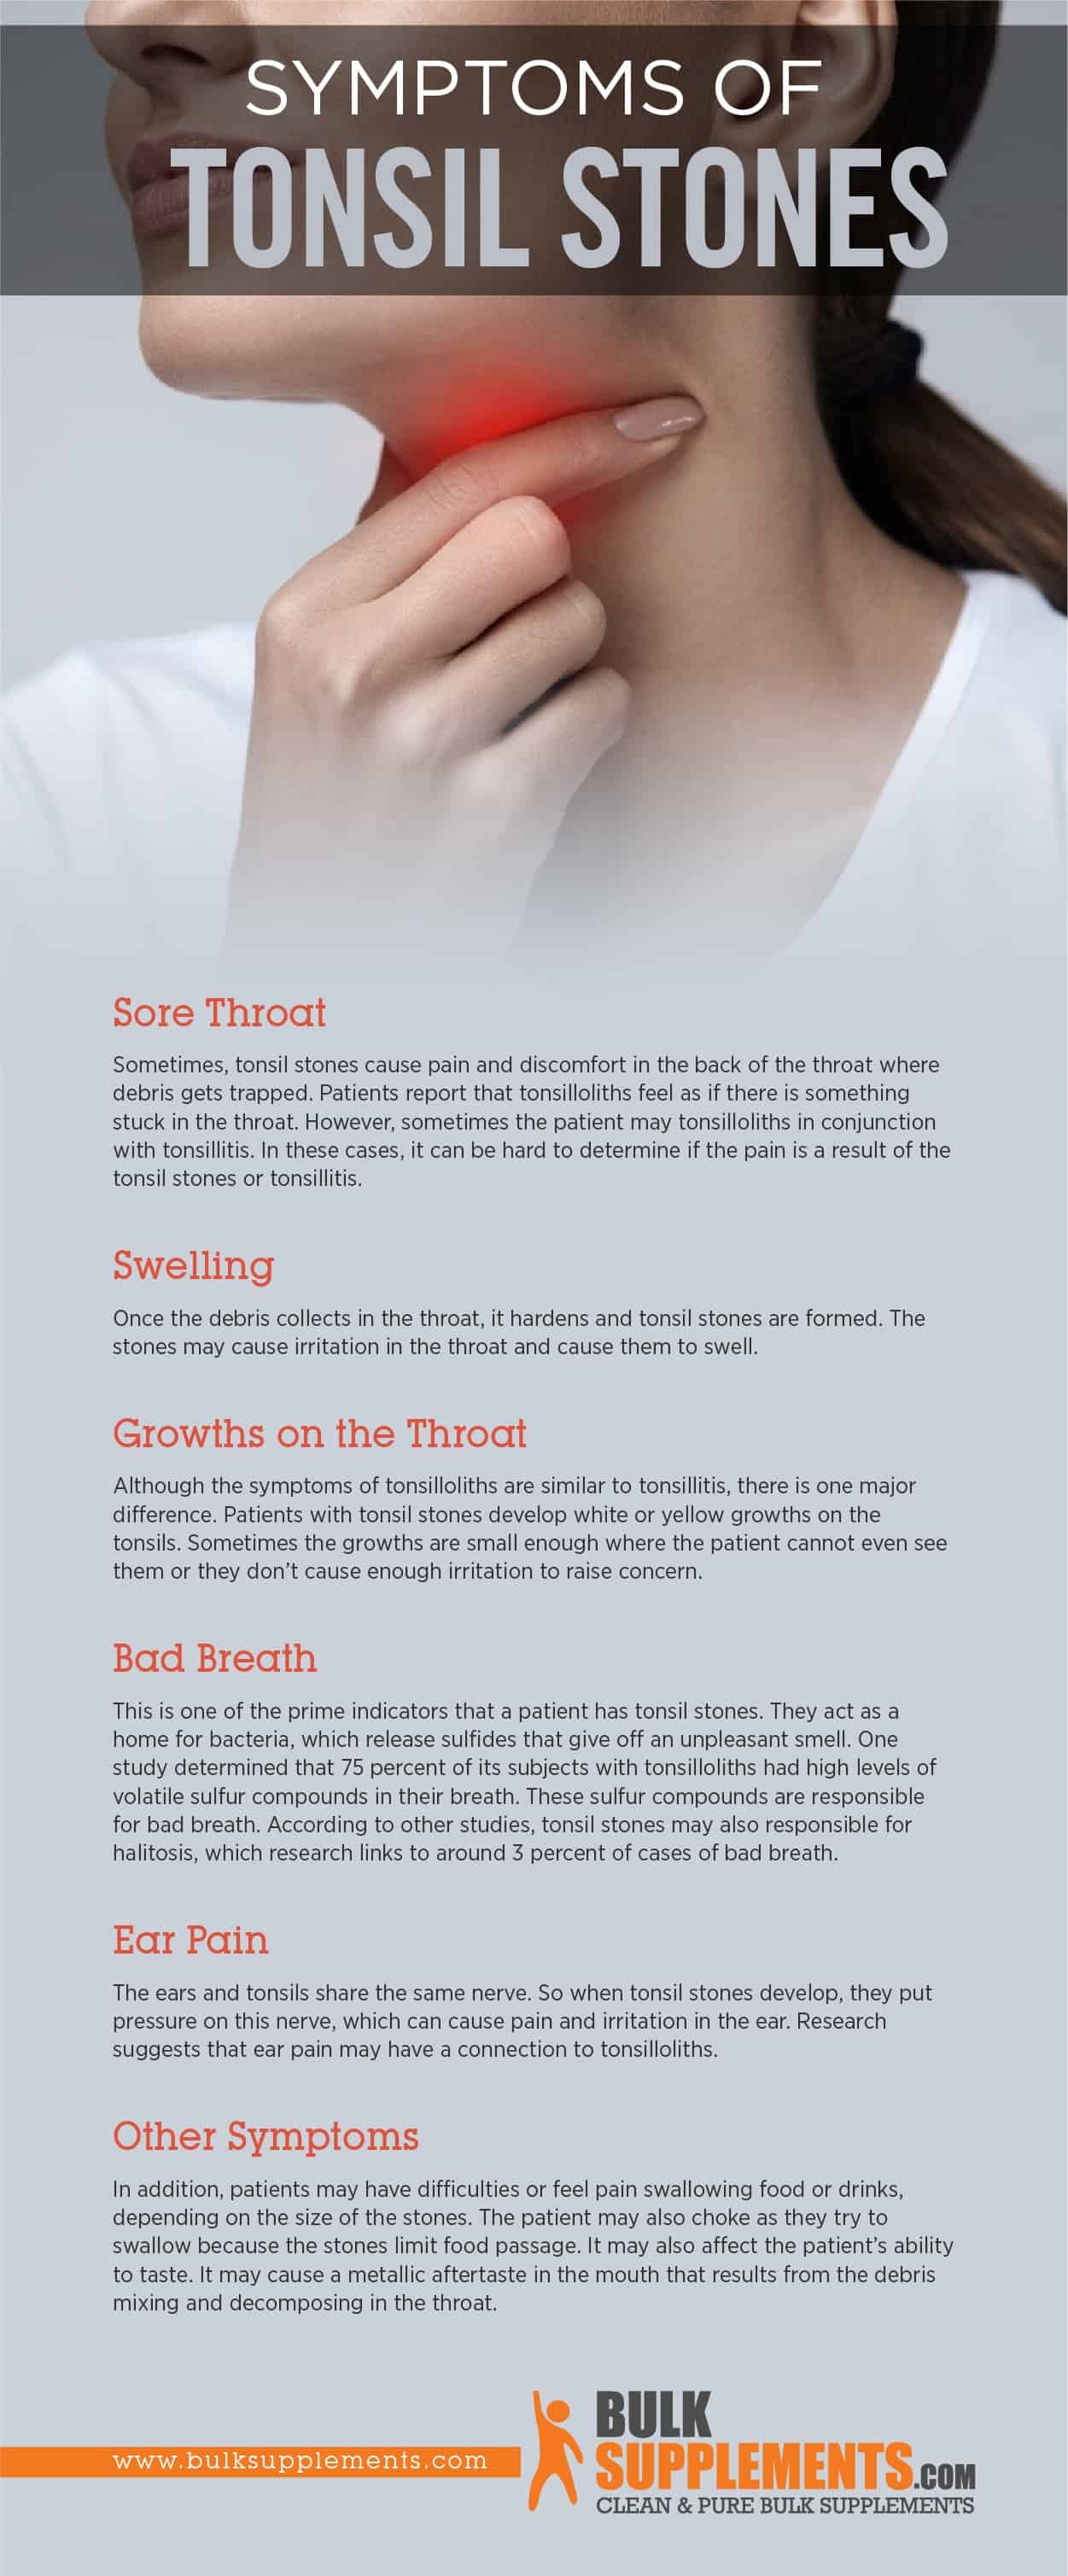 Symptoms of Tonsil Stones